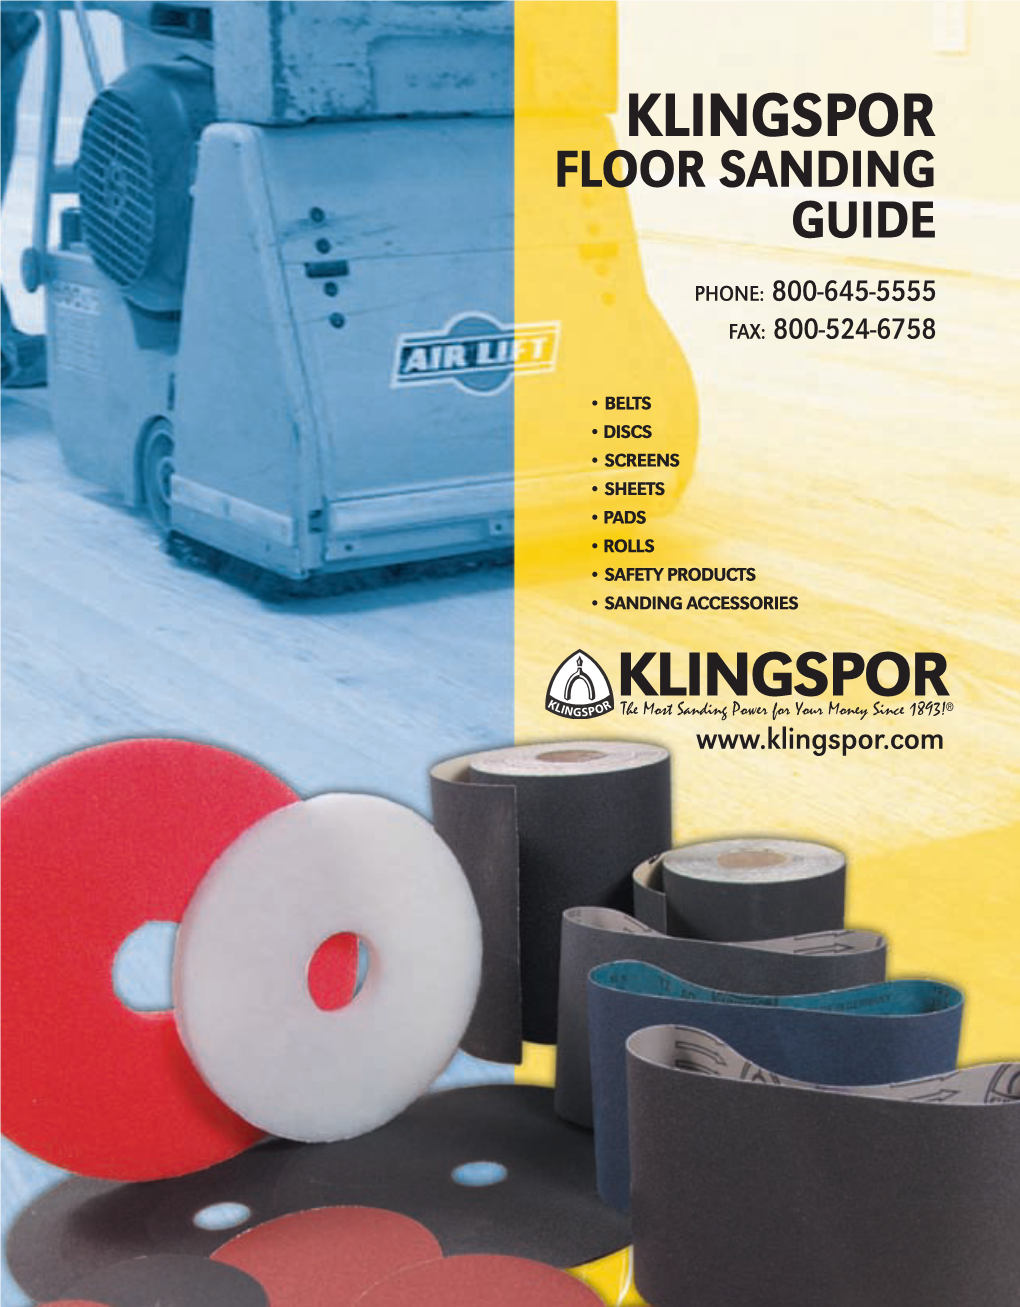 Floor Sanding Nopricegp 2008 Floor Sanding 9/2/11 9:03 AM Page 1